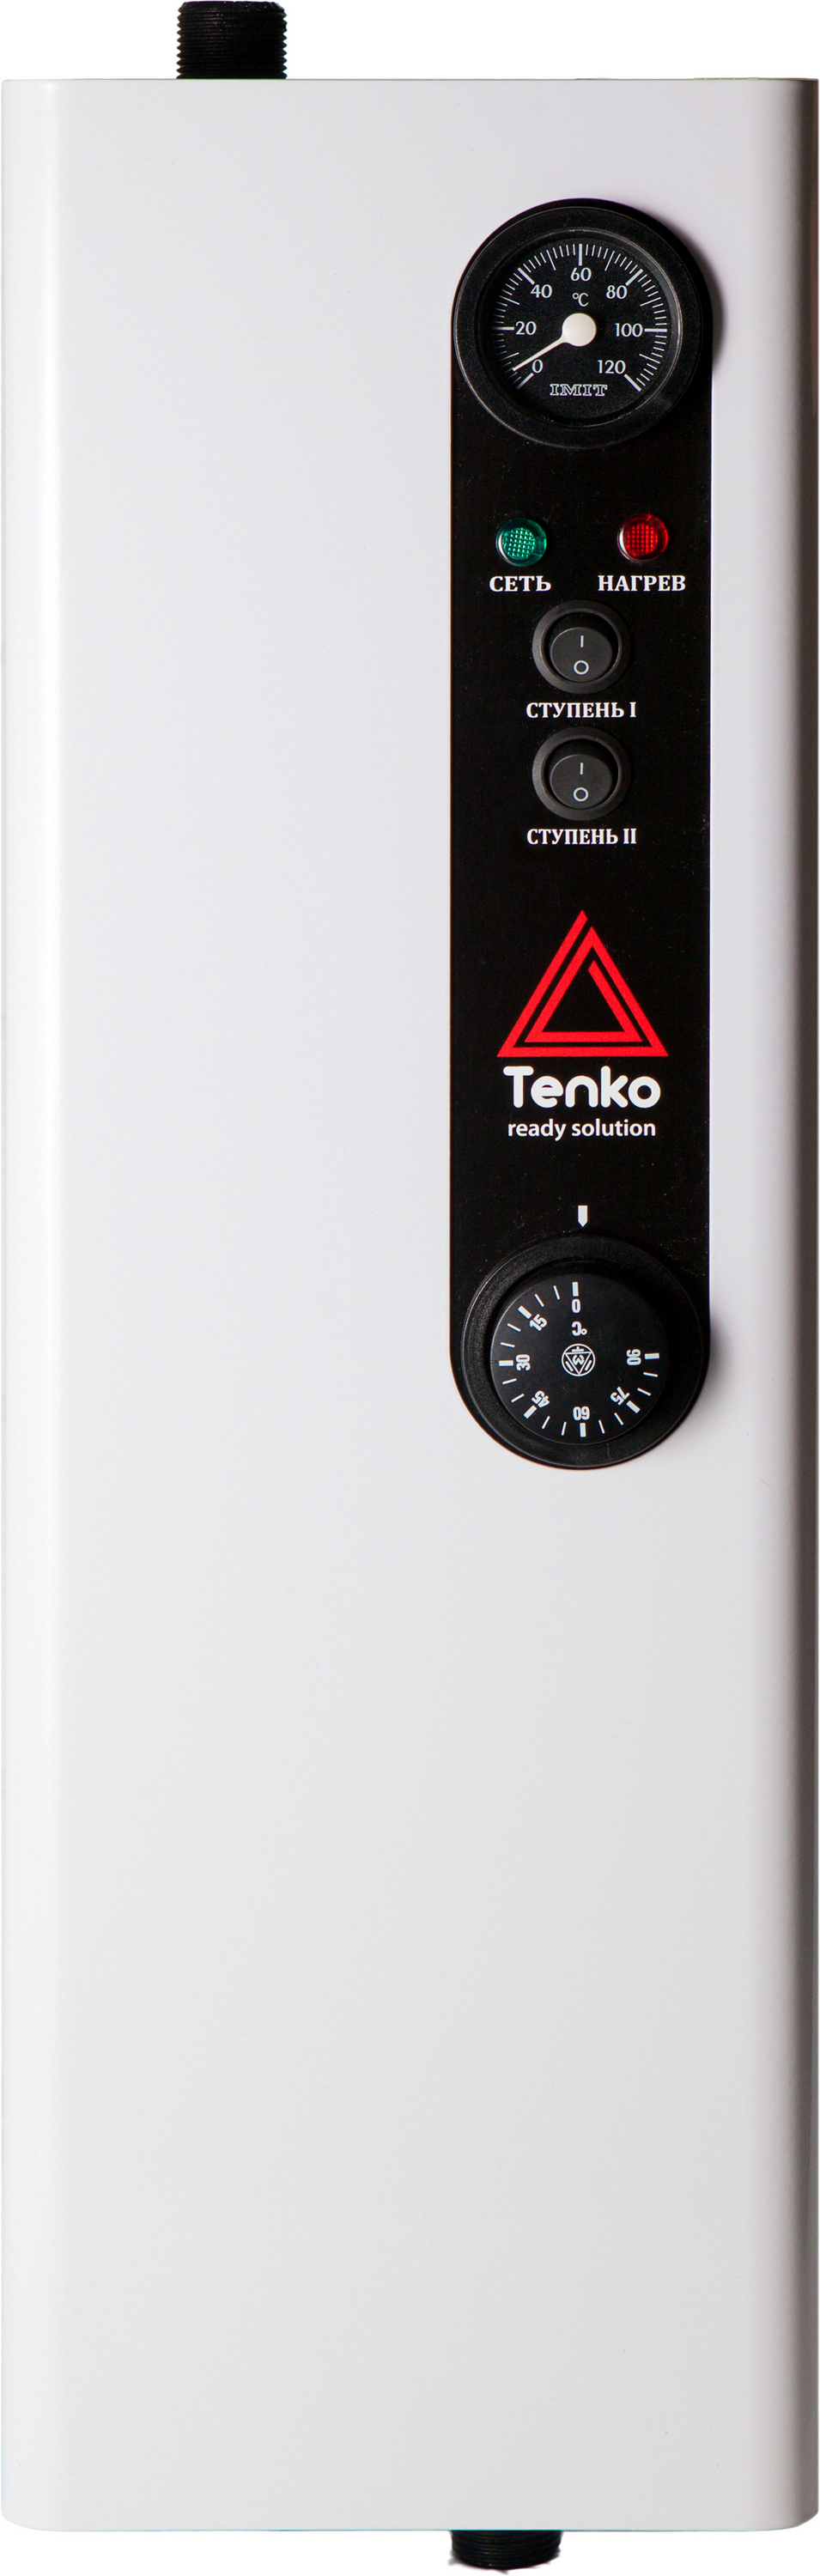 Цена электрокотел tenko трехфазный на 380 вольт Tenko Эконом 12 380 в Киеве